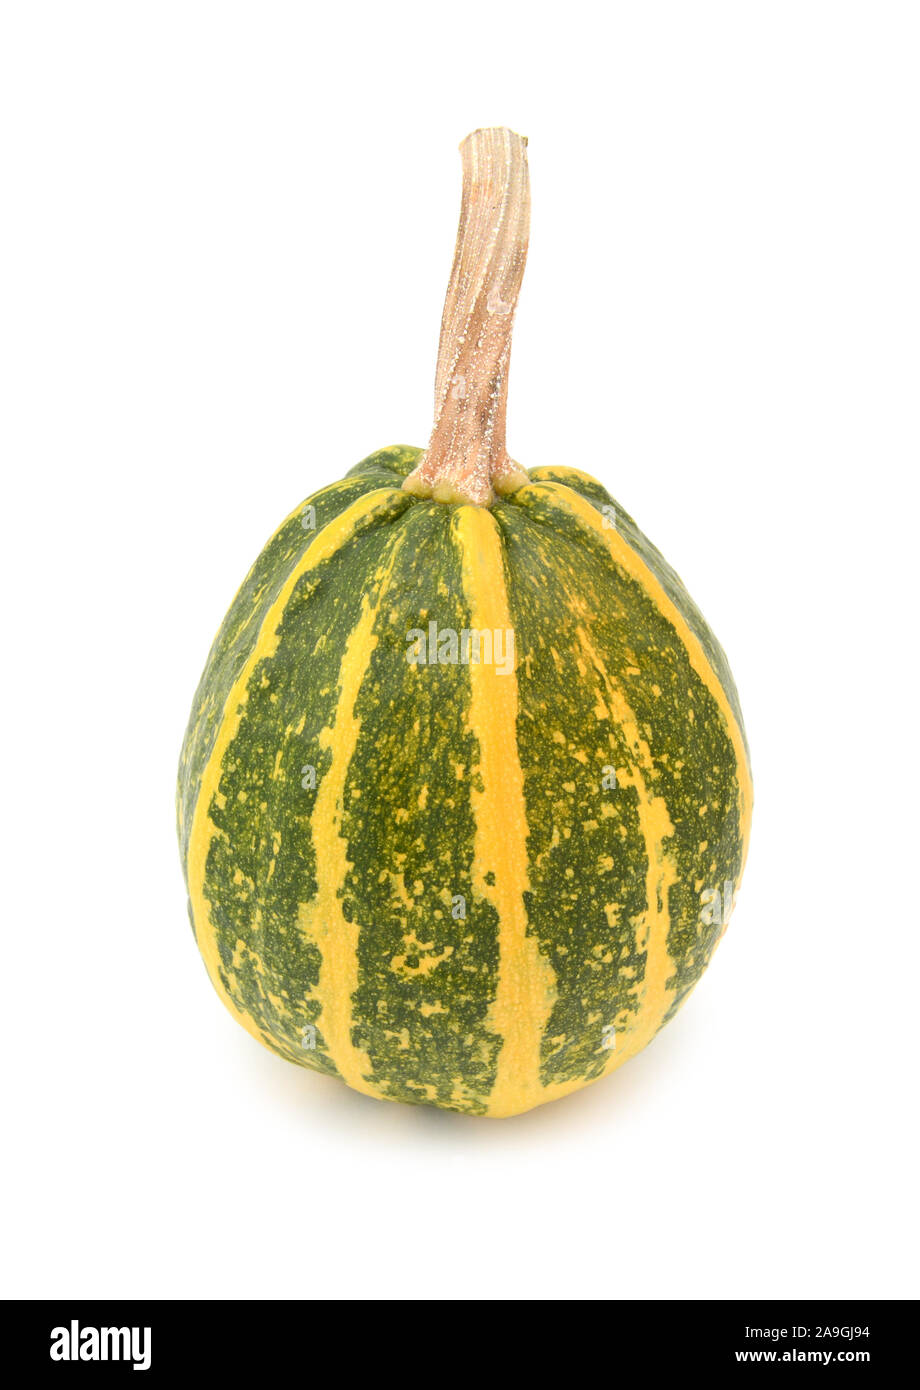 Rayé vert et jaune décoration ornement gourd pour l'automne, sur un fond blanc Banque D'Images